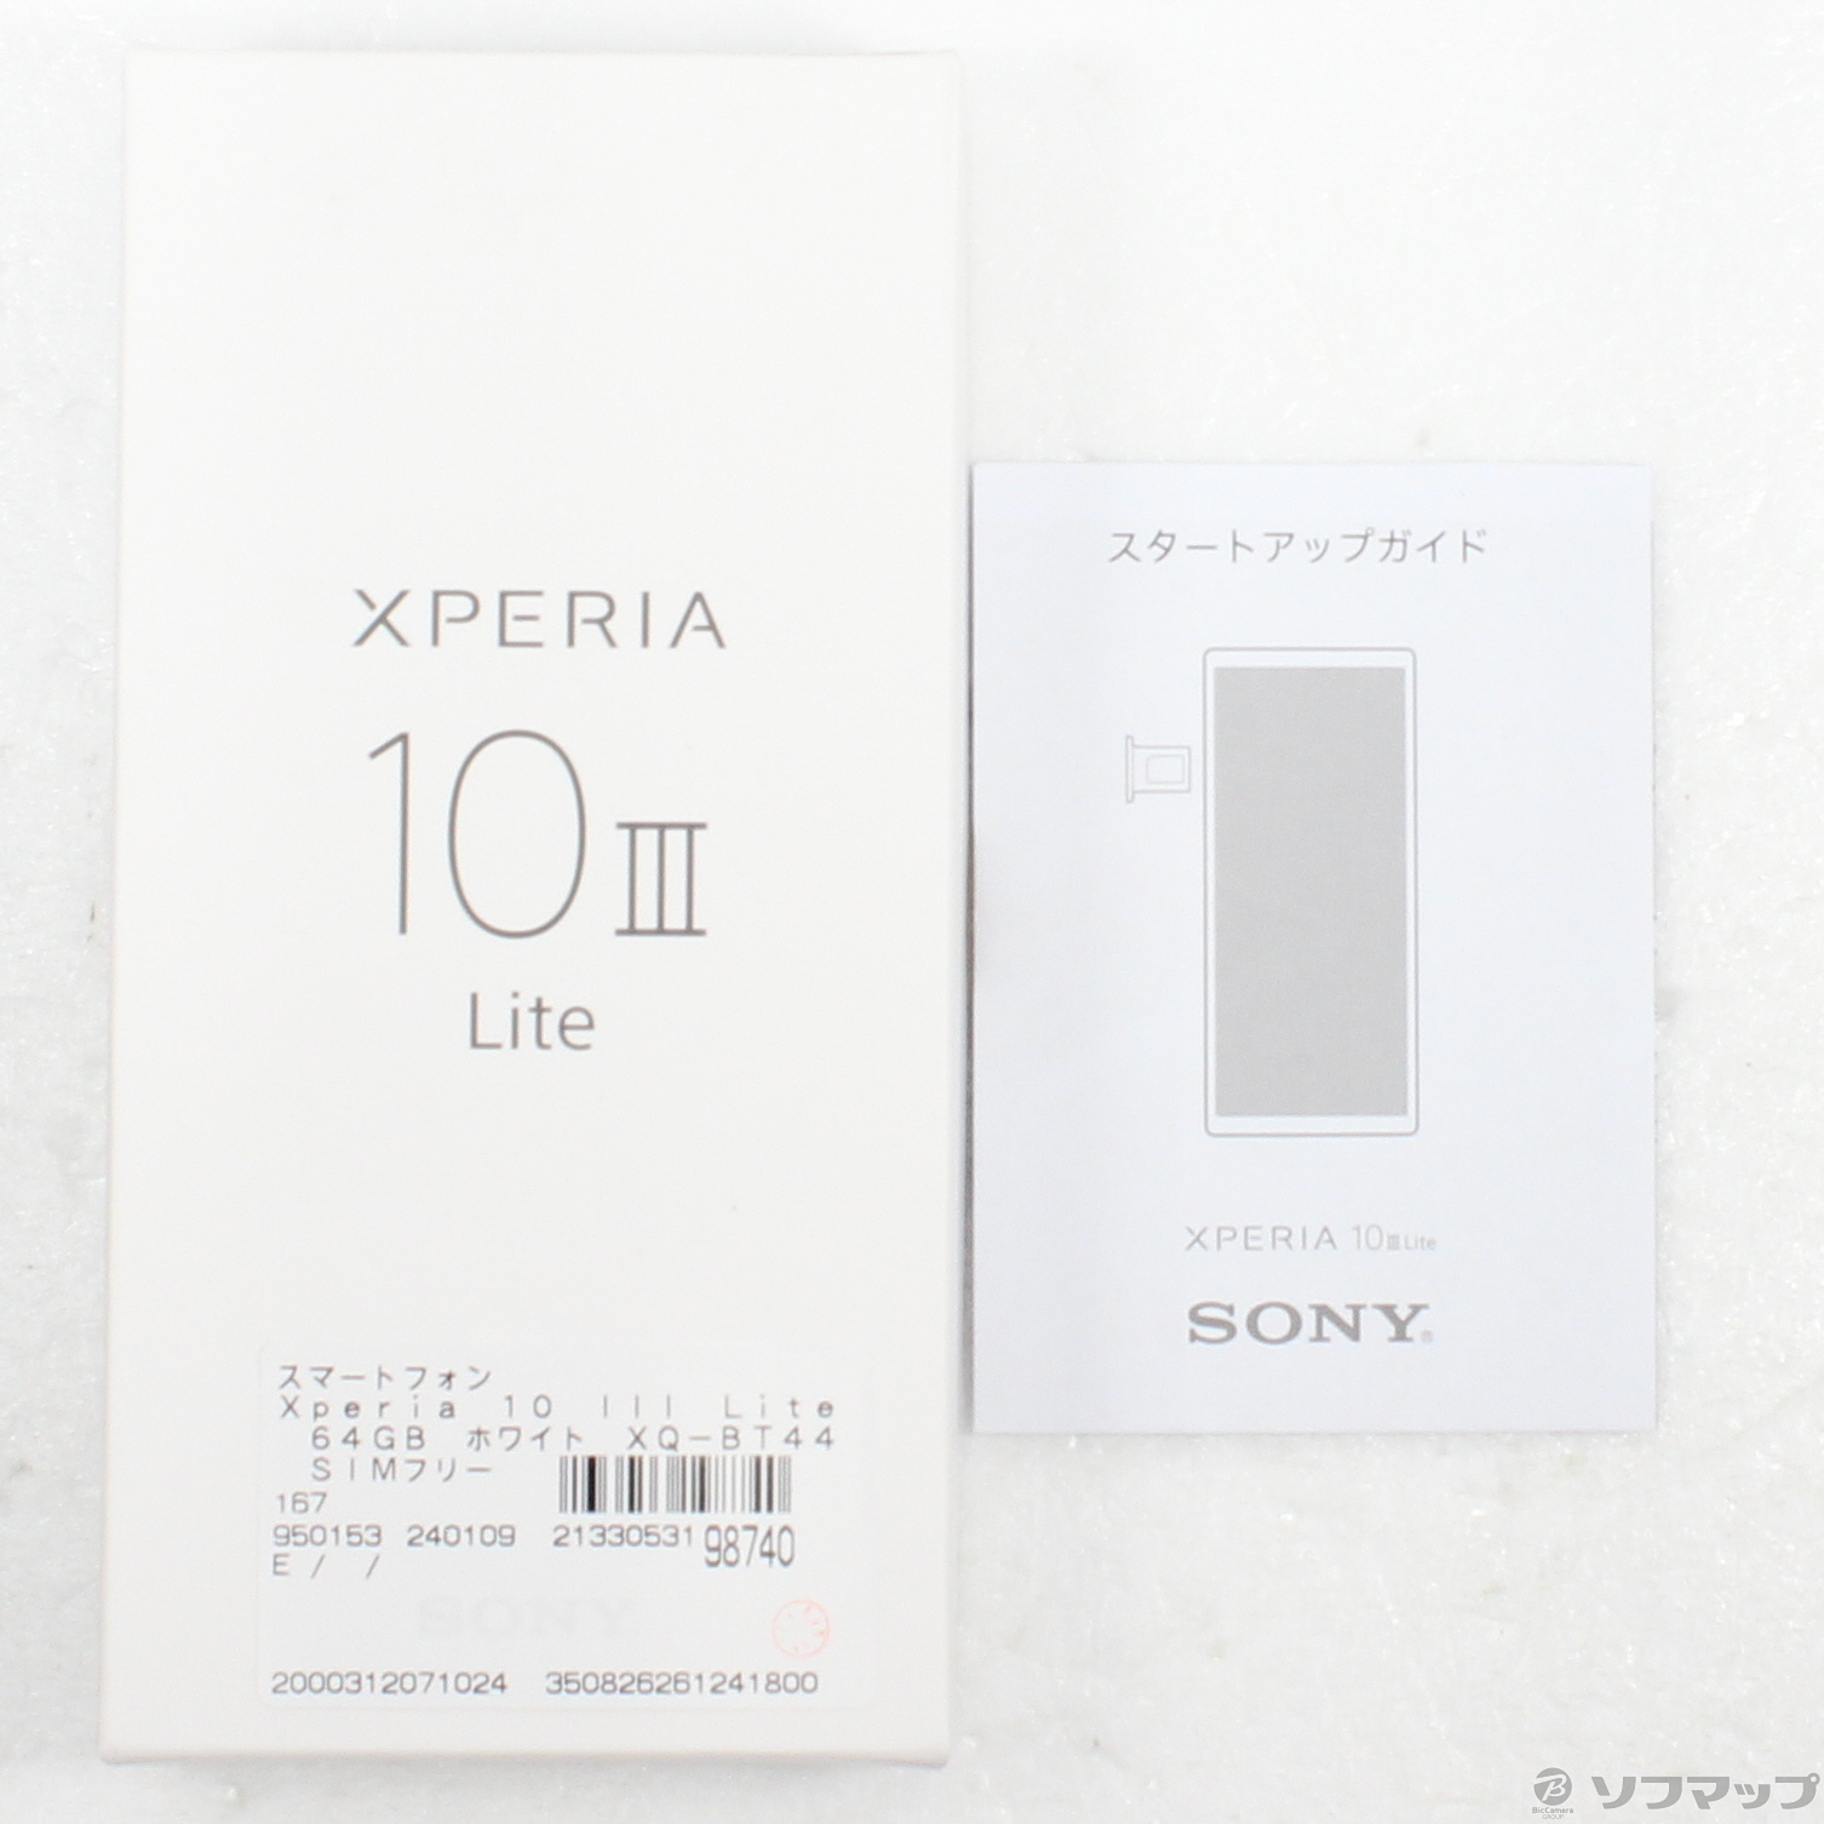 ☆大人気商品☆ Xperia 10 III Lite ブルー 64 GB SIMフリー 新品 ...